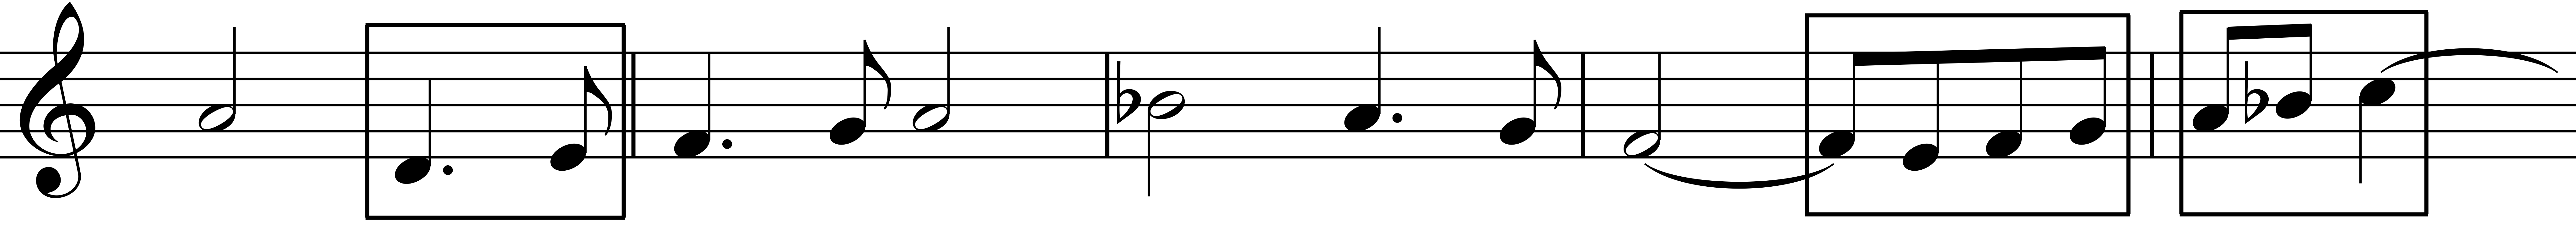 Figure 1: <em>Contrapunctus</em> 5, bars 1-5, alto.